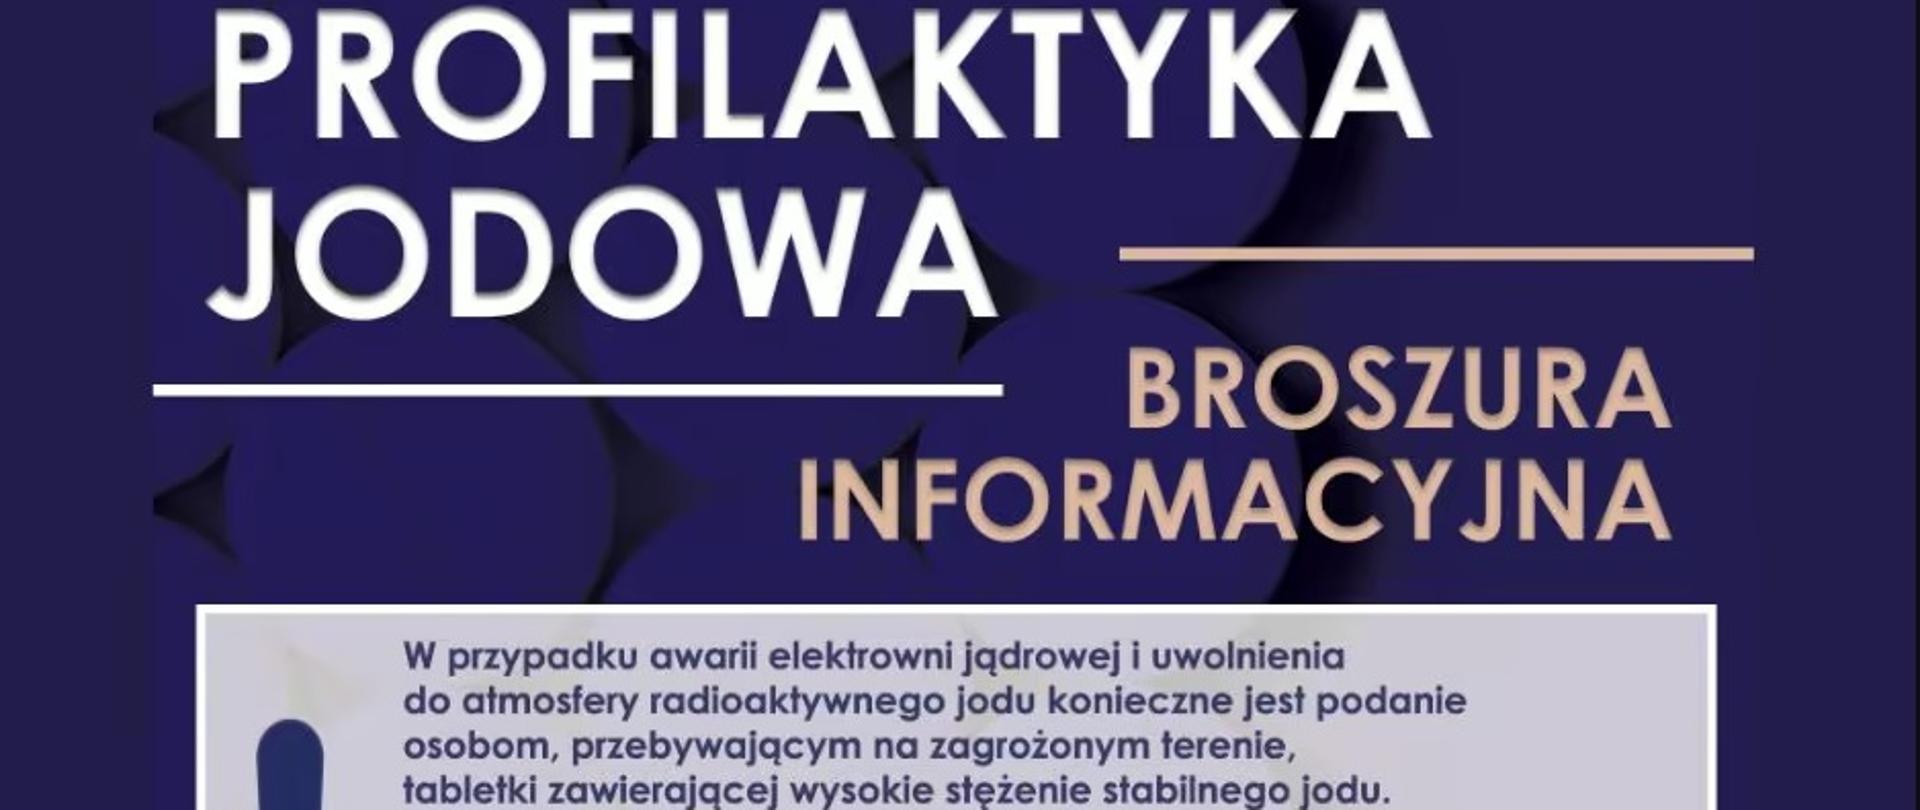 Profilaktyka jodowa - broszura informacyjna.